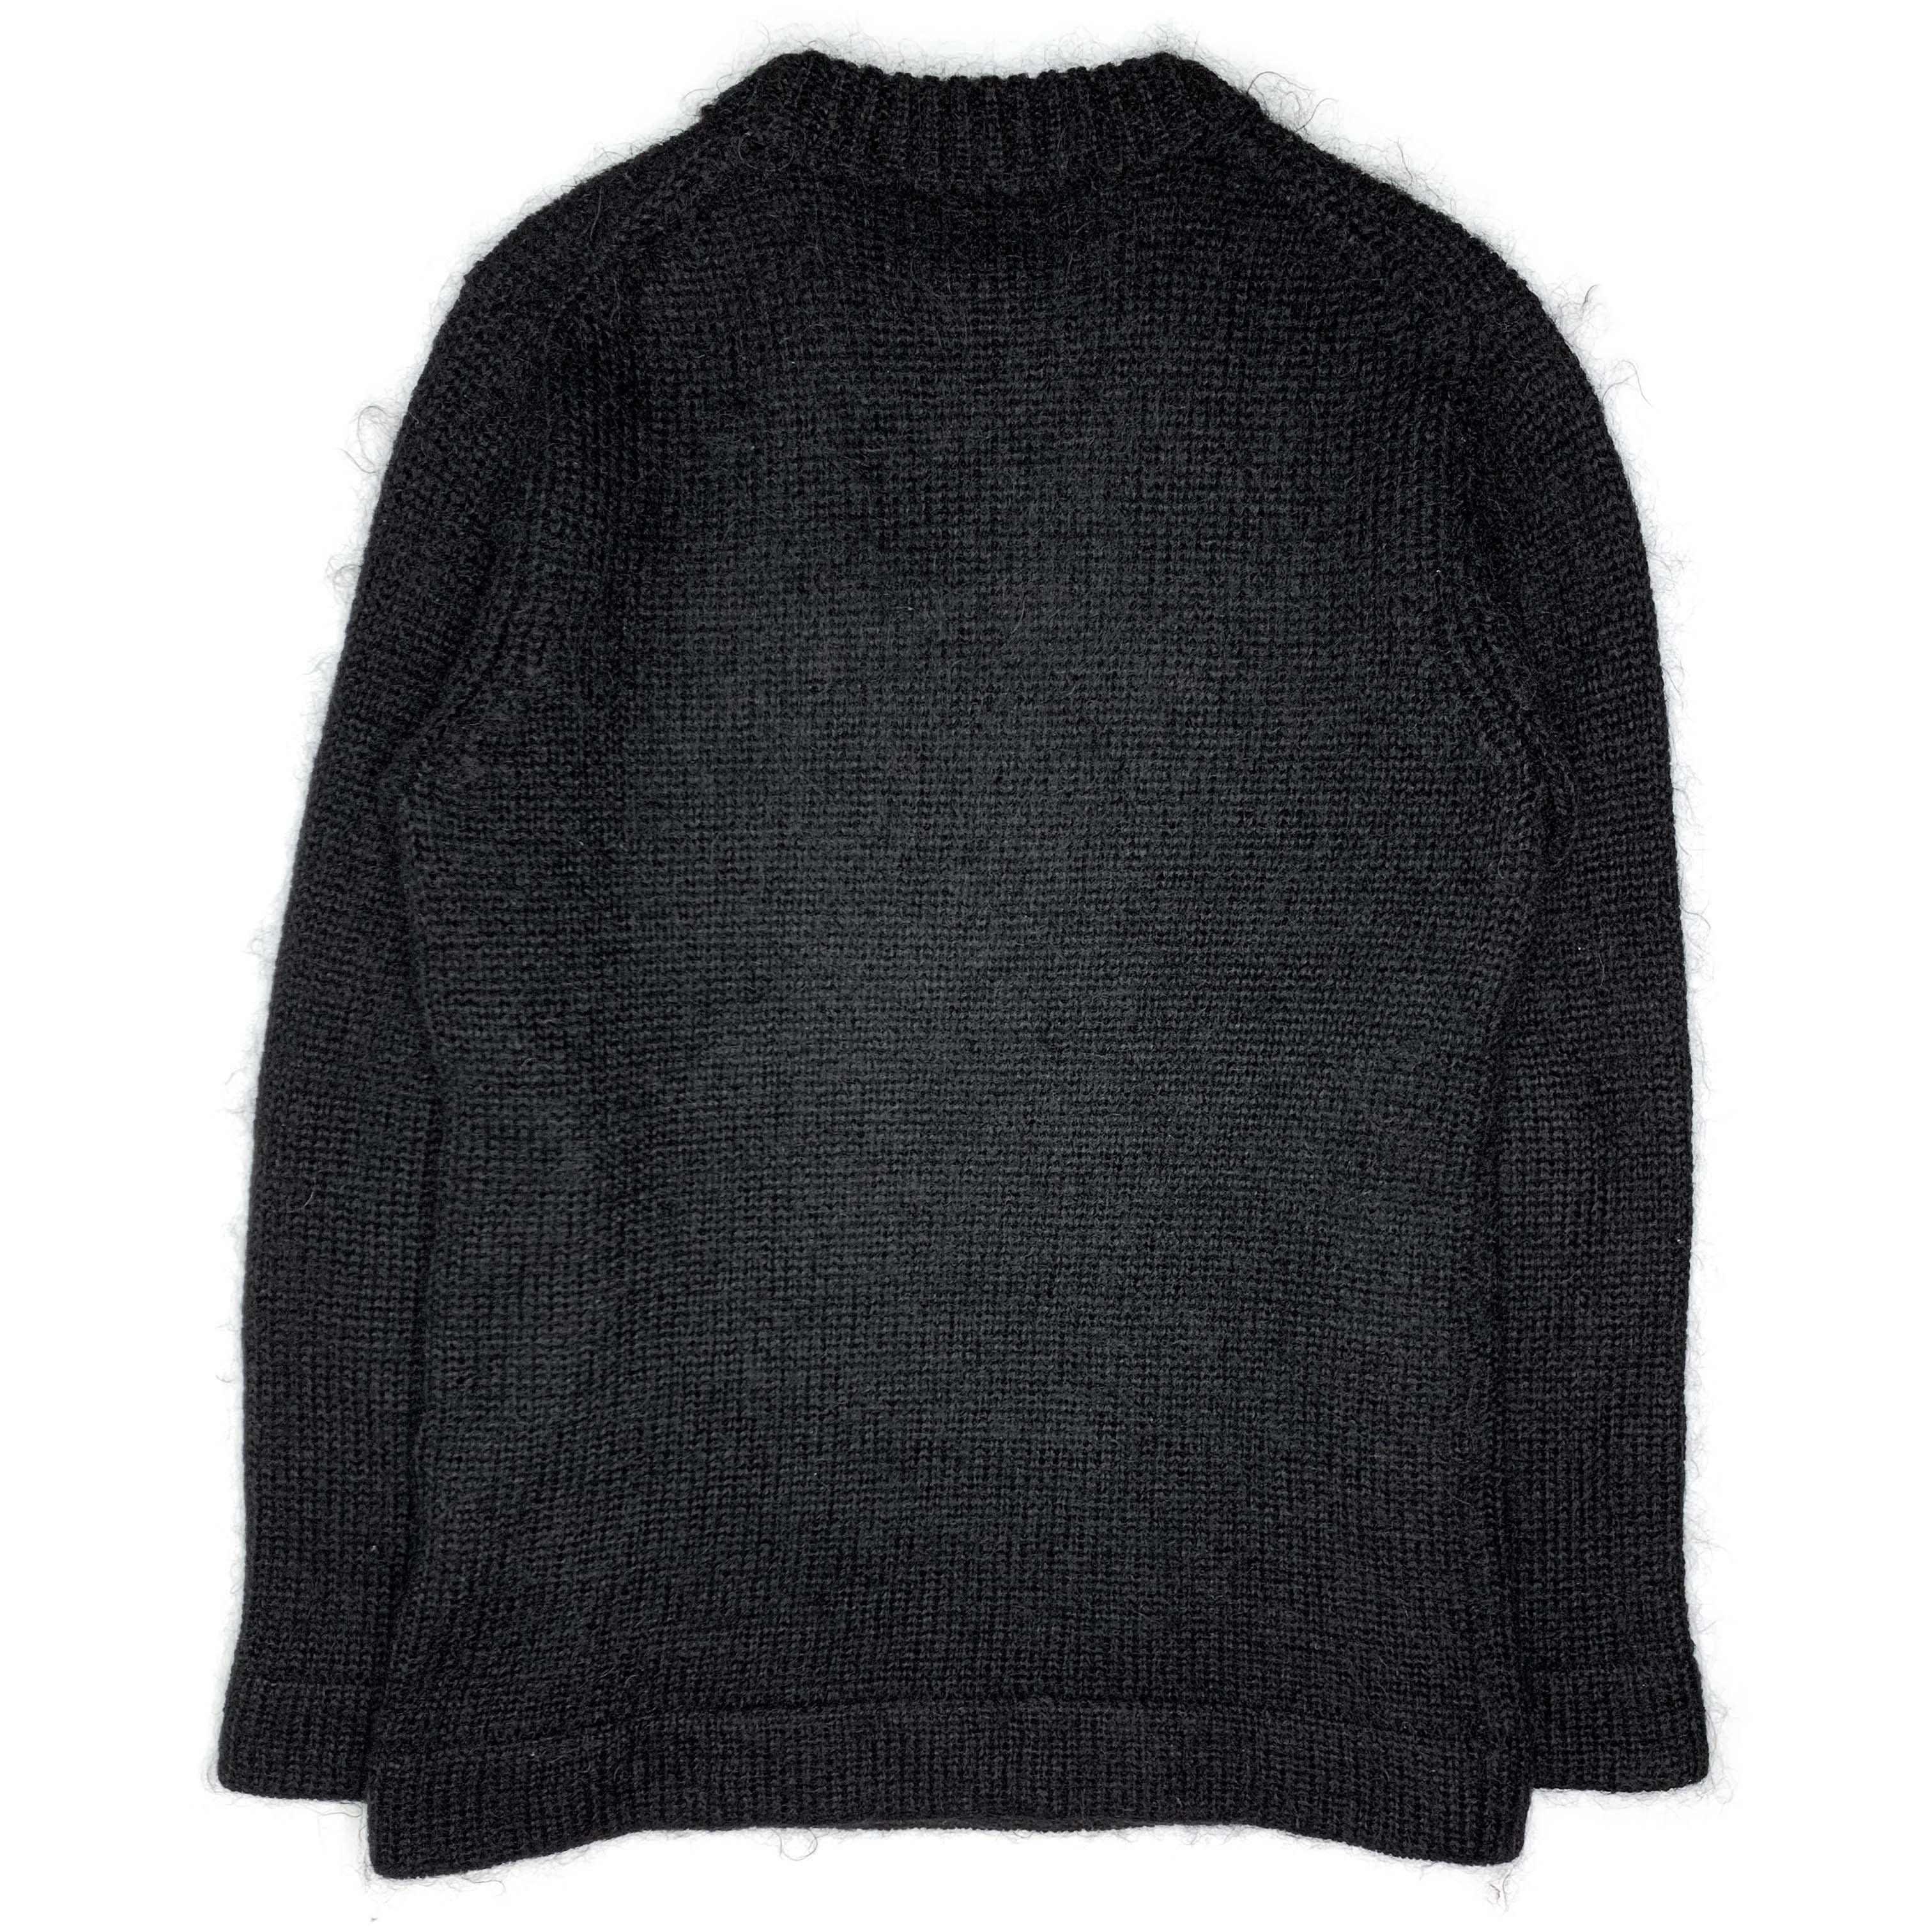 AW95 Knit Wool-Nylon Sweater - 2